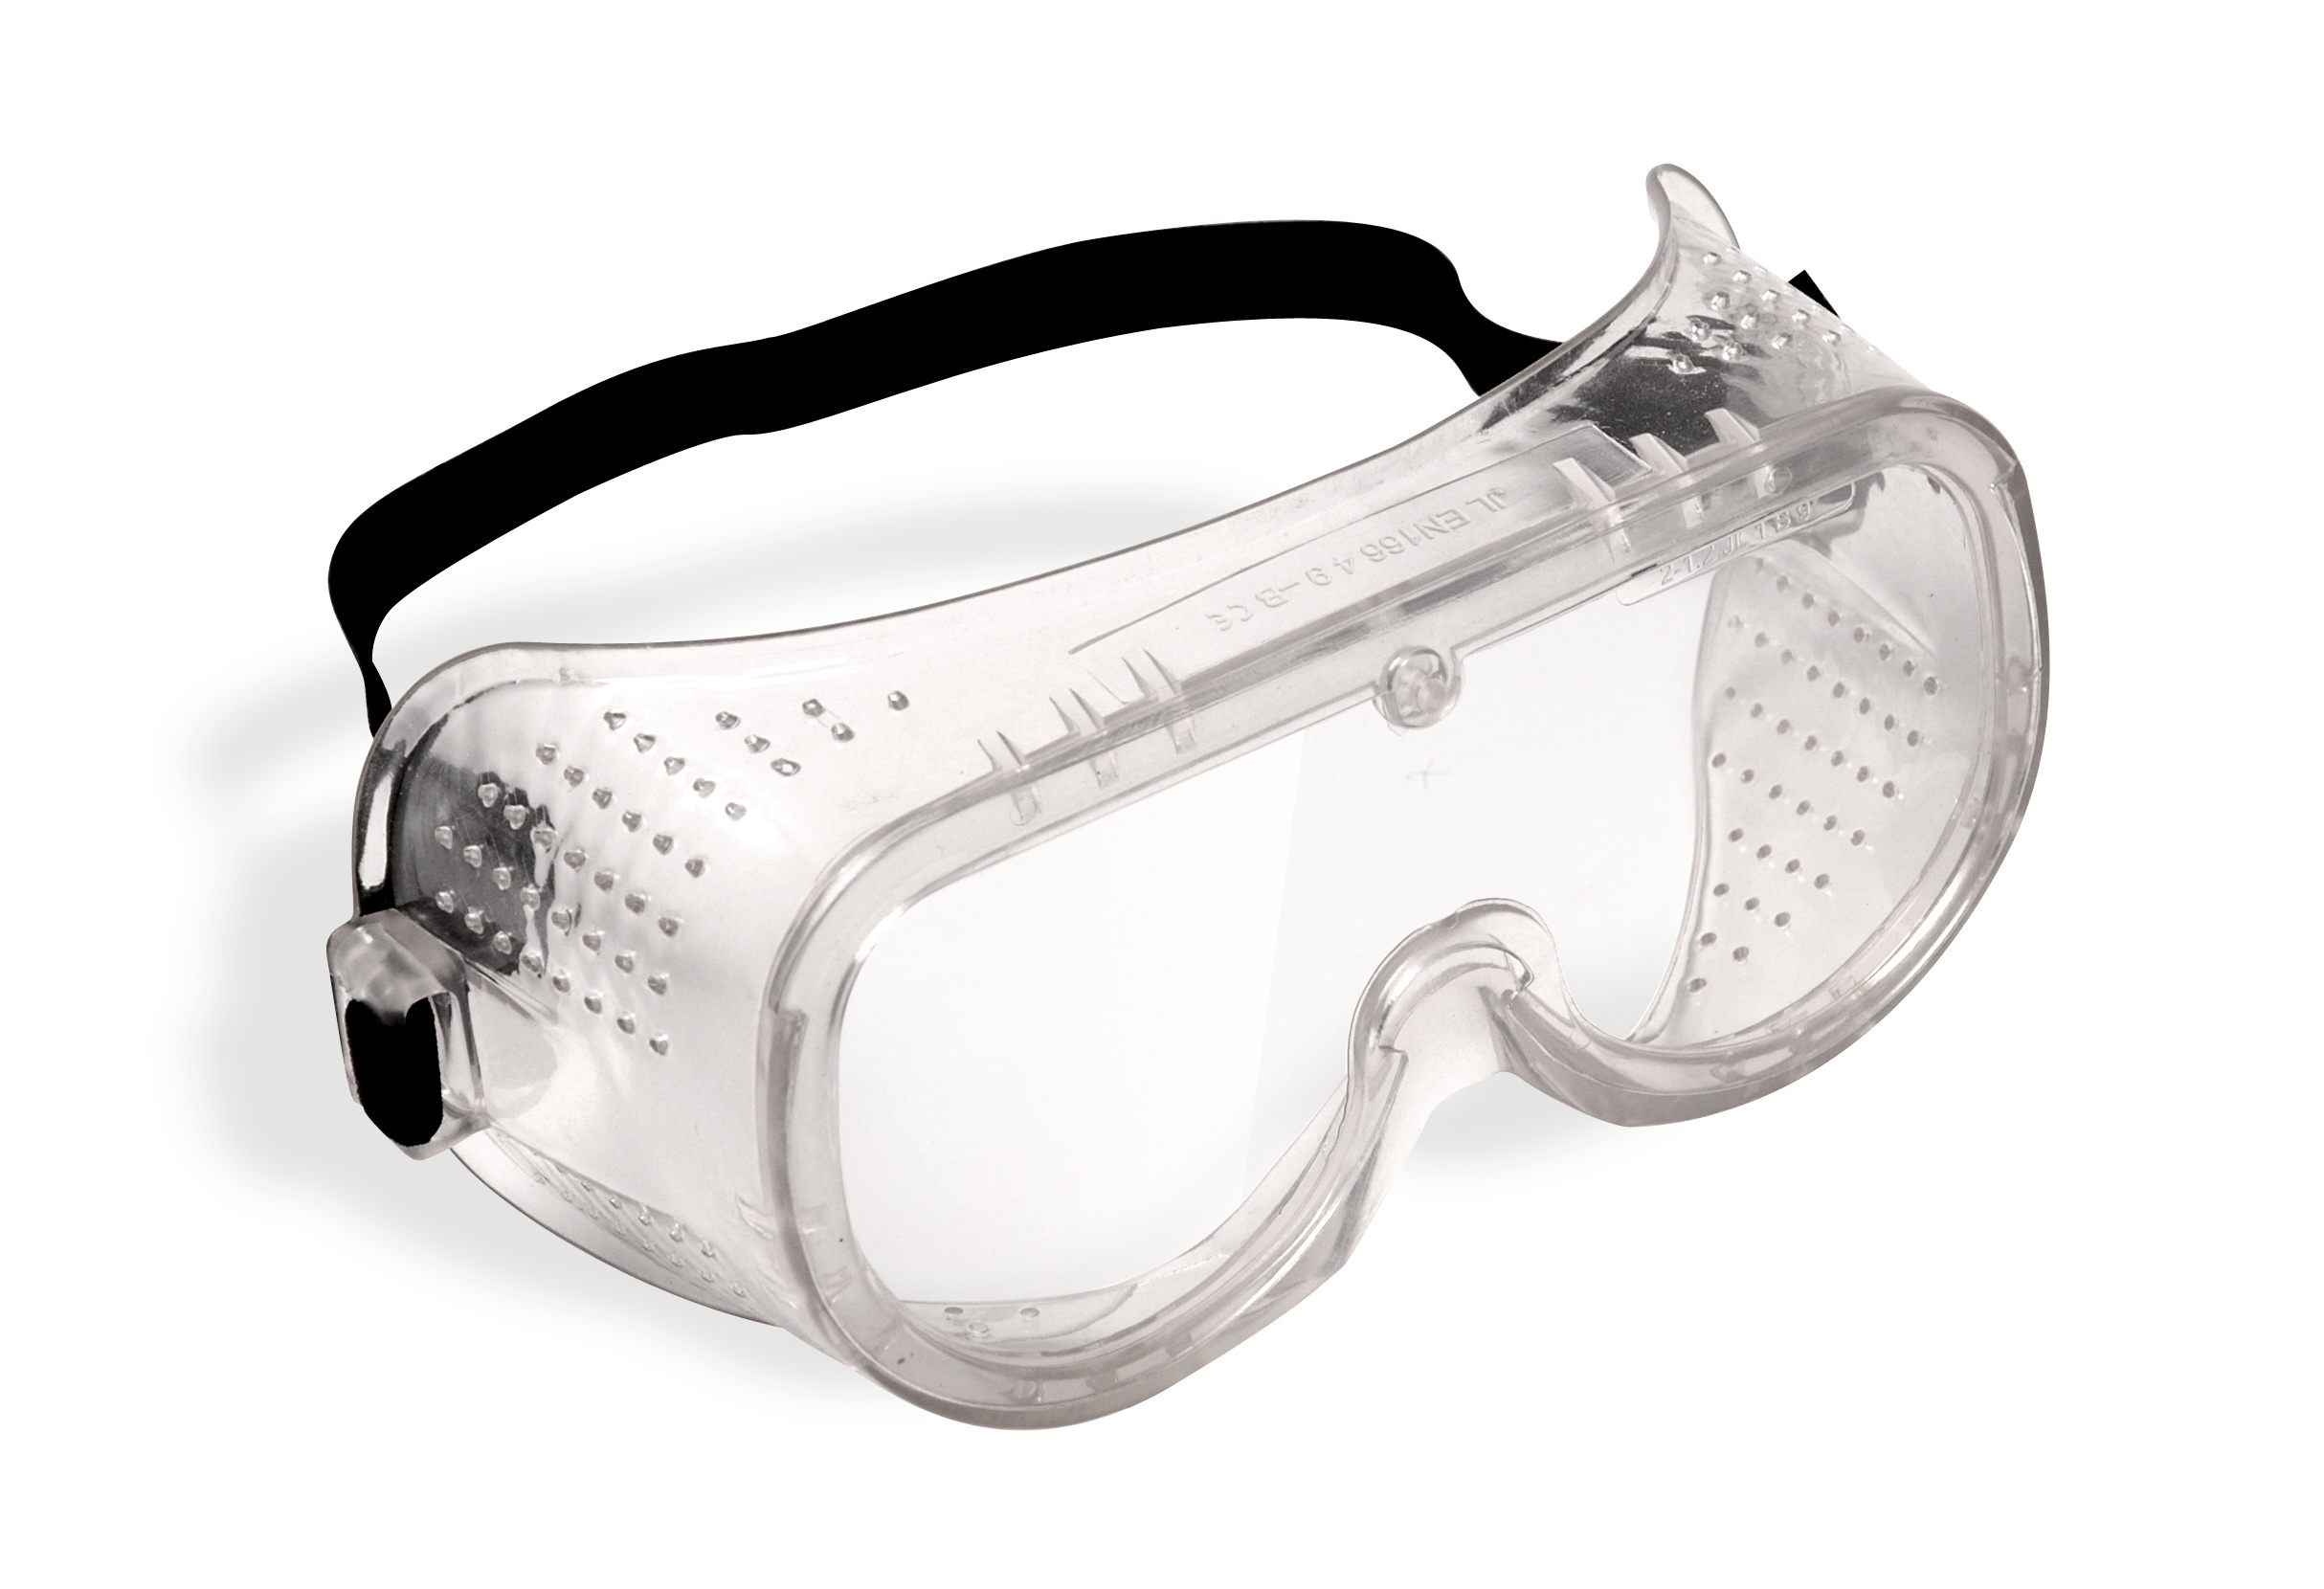 Очки защитные окпд. Jsg1011-c Chem Vision очки защитные закрытого типа. Очки защитные "Исток" закрытого типа с прямой вентиляцией. Очки защитные с прямой вентиляцией р2 ПВ 964738. Очки защитные с прямой вентиляцией 89161.